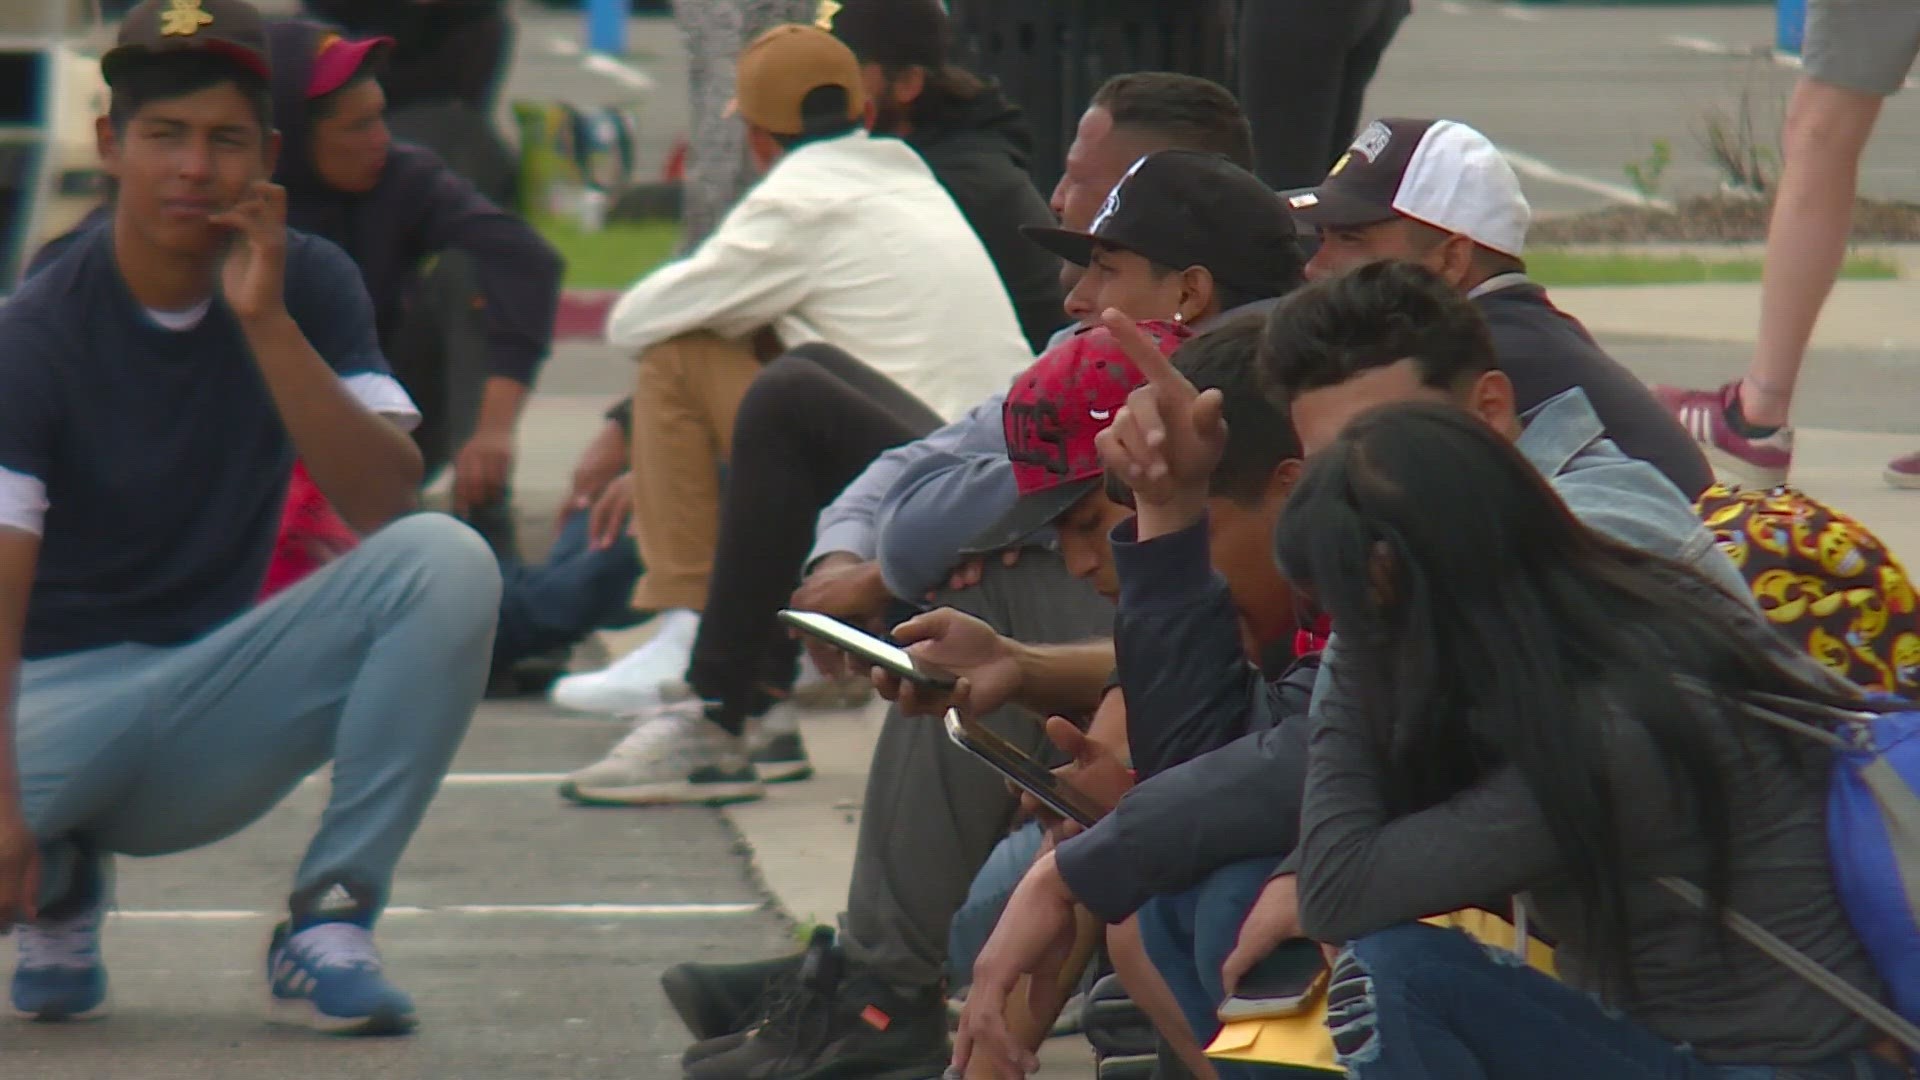 Los migrantes que llegan de Venezuela dicen que están durmiendo en un estacionamiento y no han tenido mucho para comer. Denver dice que se está quedando sin recursos